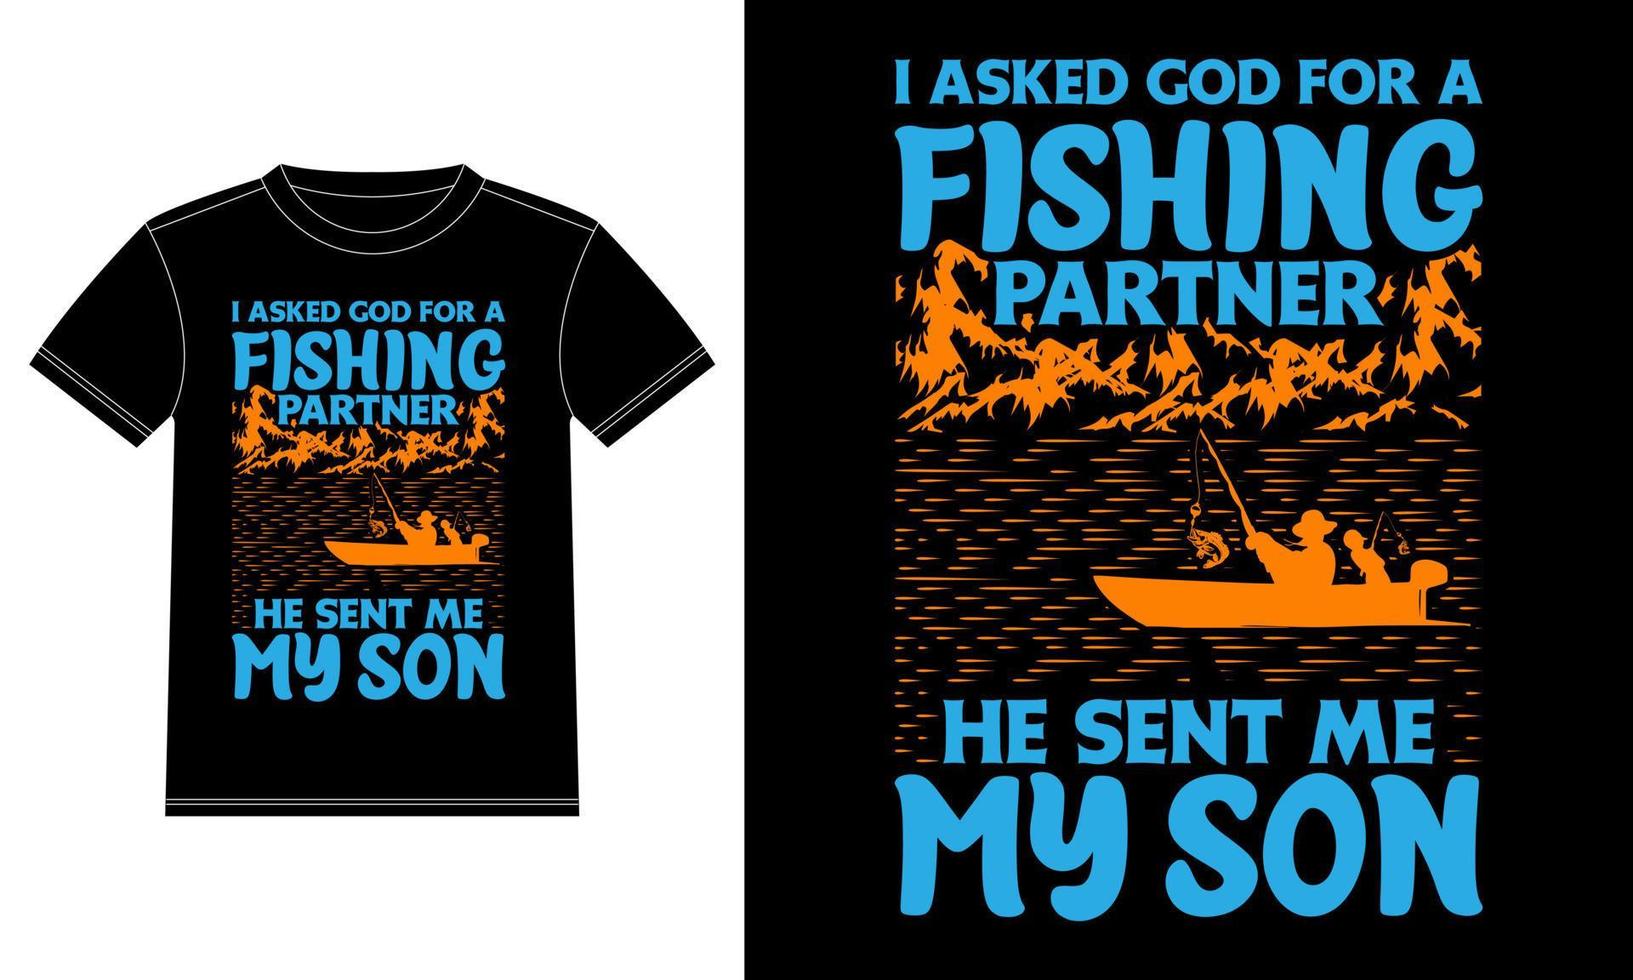 pedi a deus um parceiro de pesca, ele me enviou meu filho - modelo de design de camiseta de pesca, adesivo de janela de carro, casulo, capa, fundo preto isolado vetor